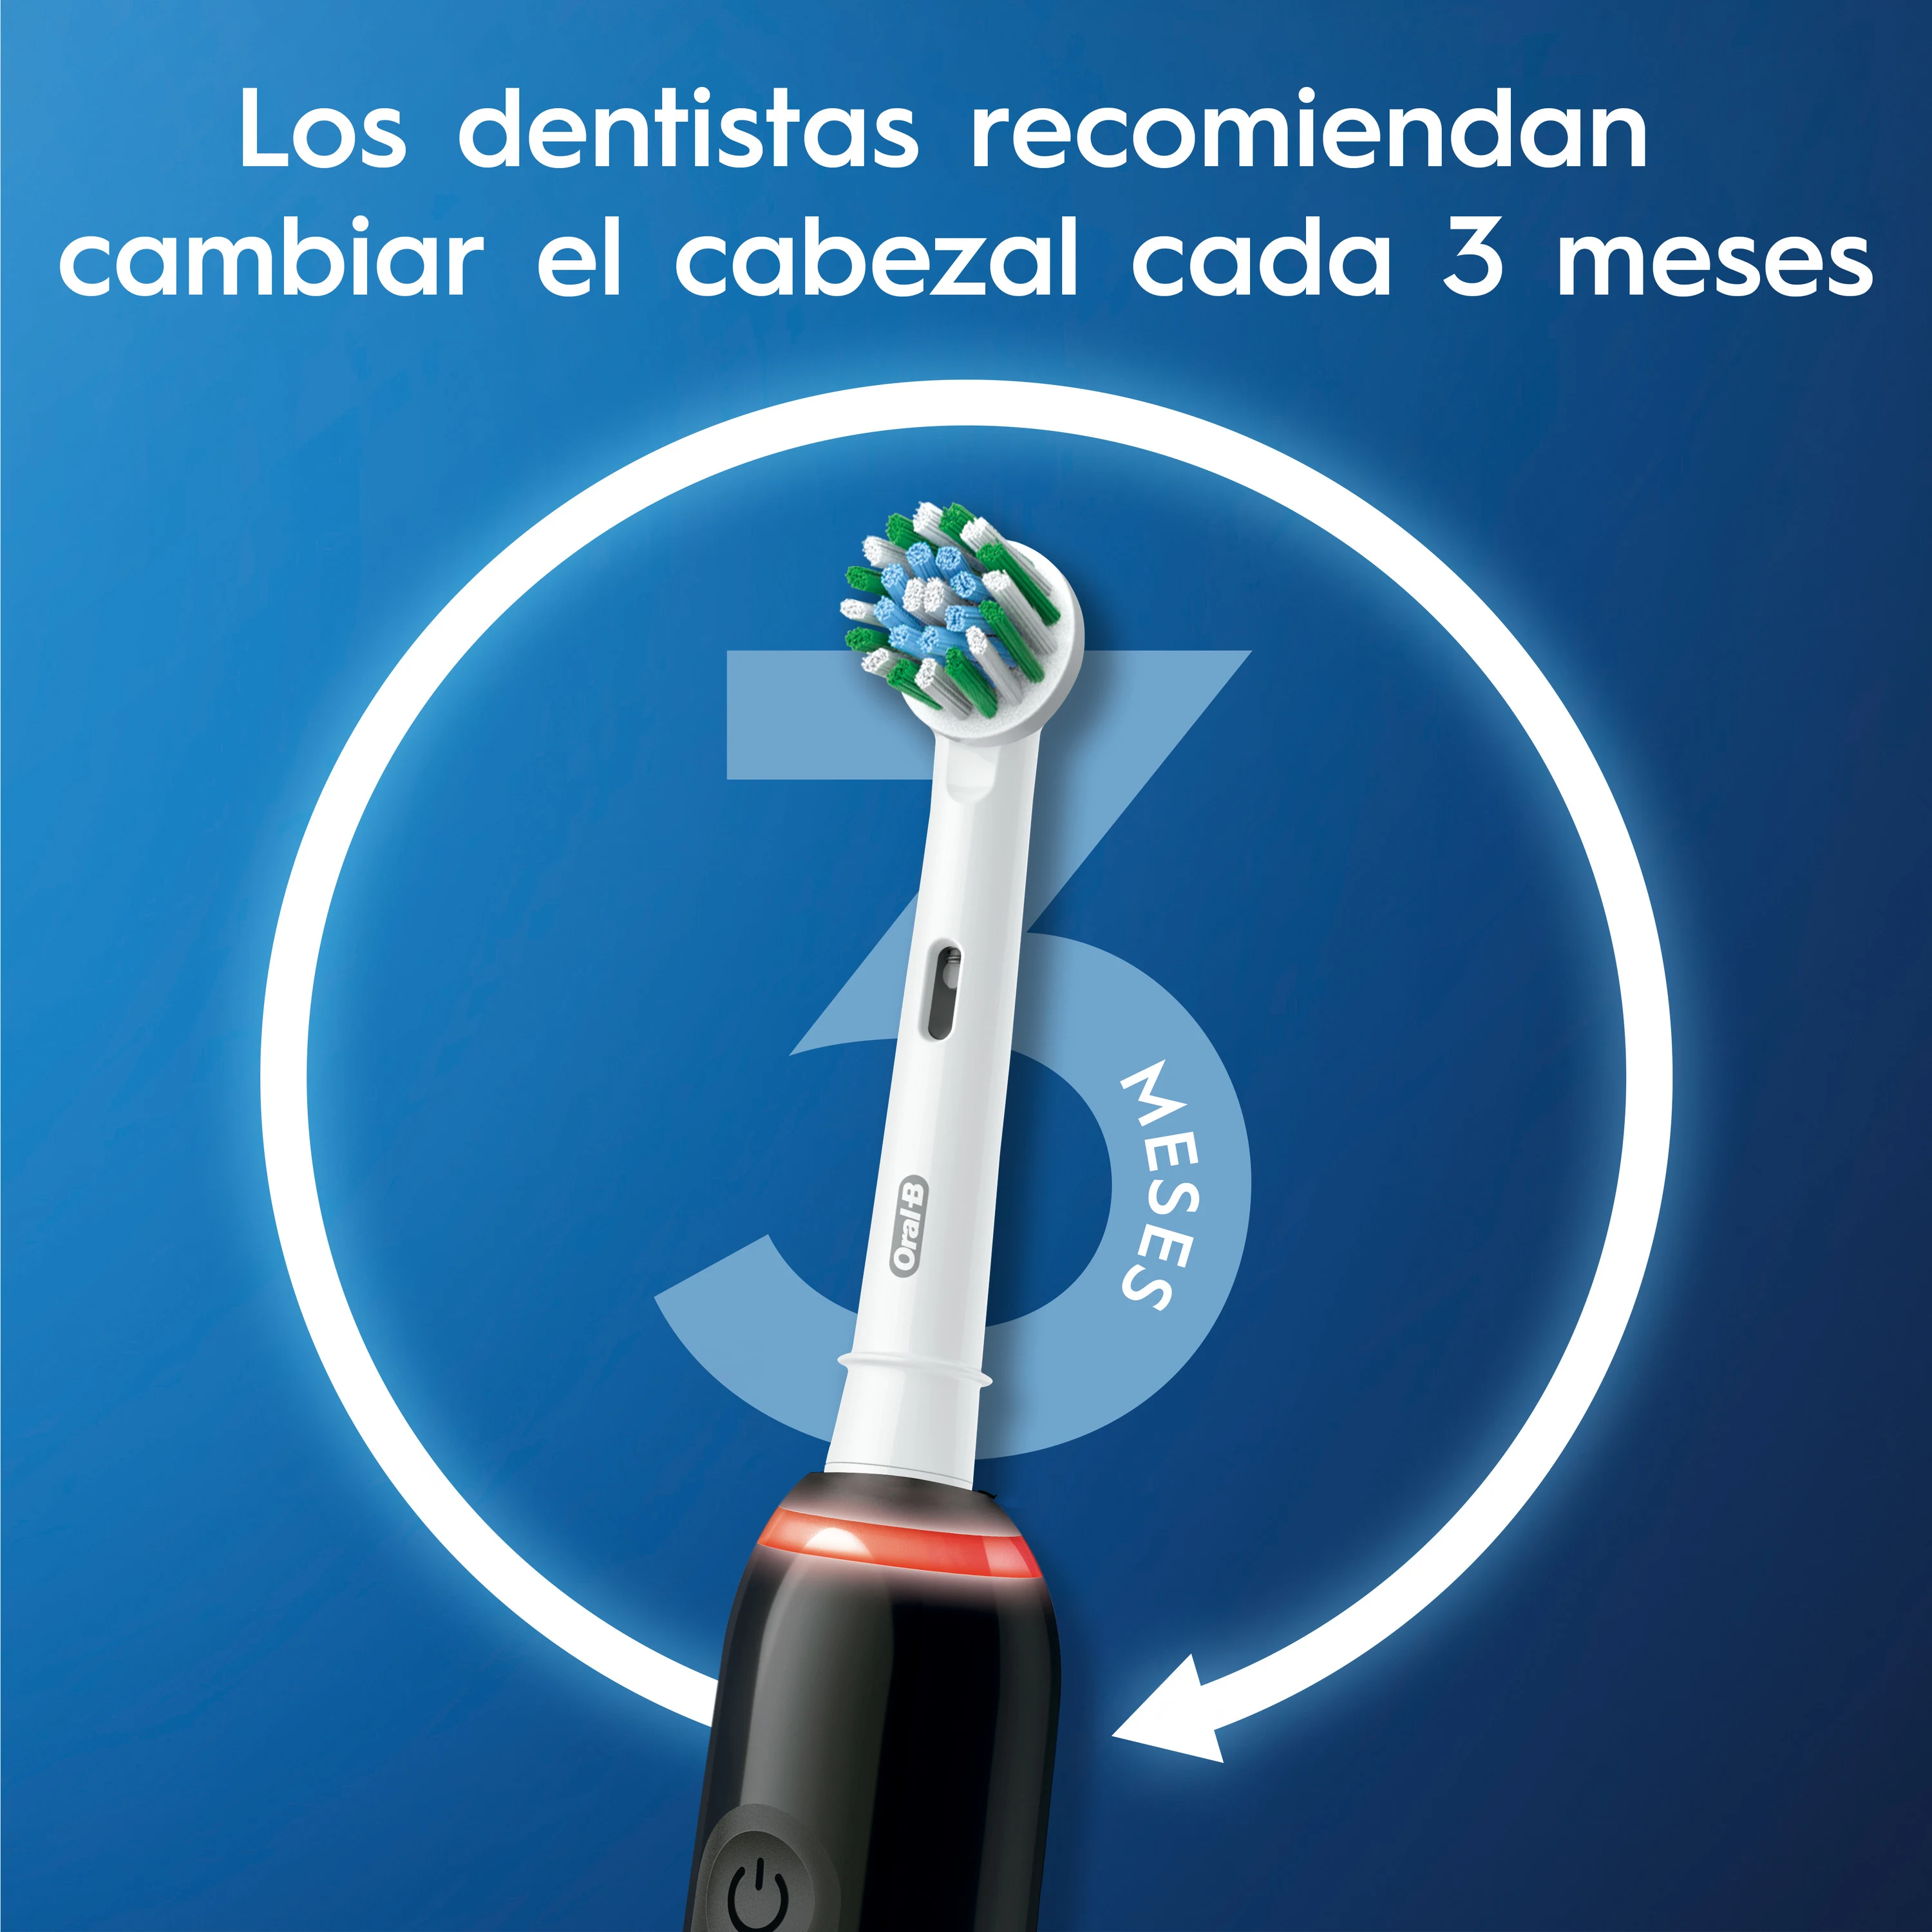 Cepillo Eléctrico Oral B. Oral B Limpieza y Protección Profesional 3.